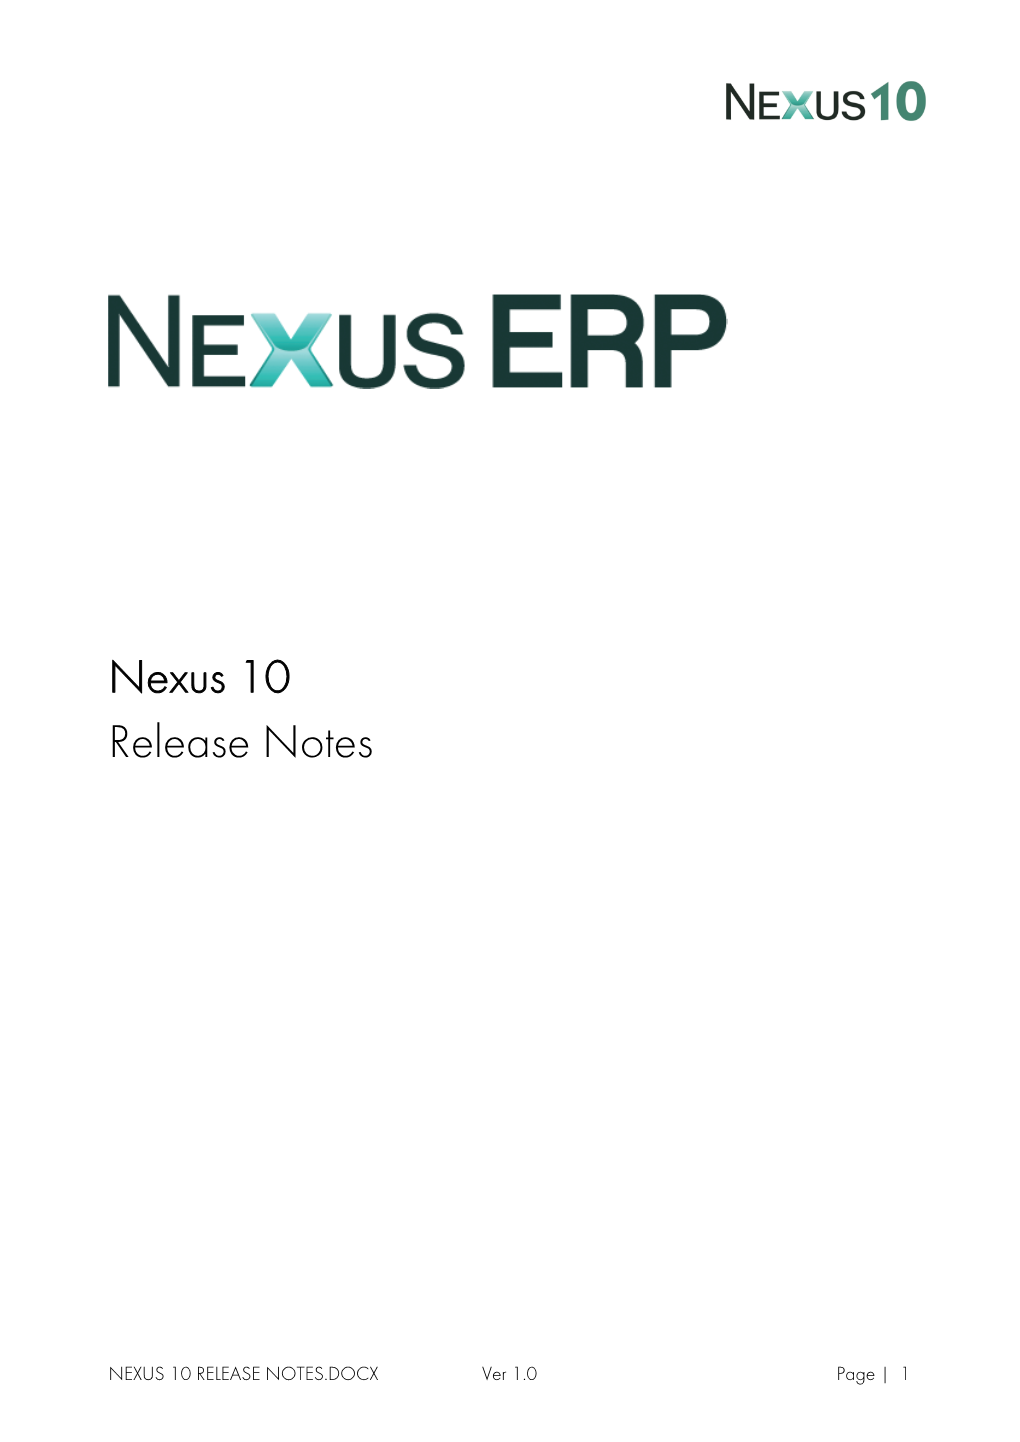 Nexus 10 Release Notes